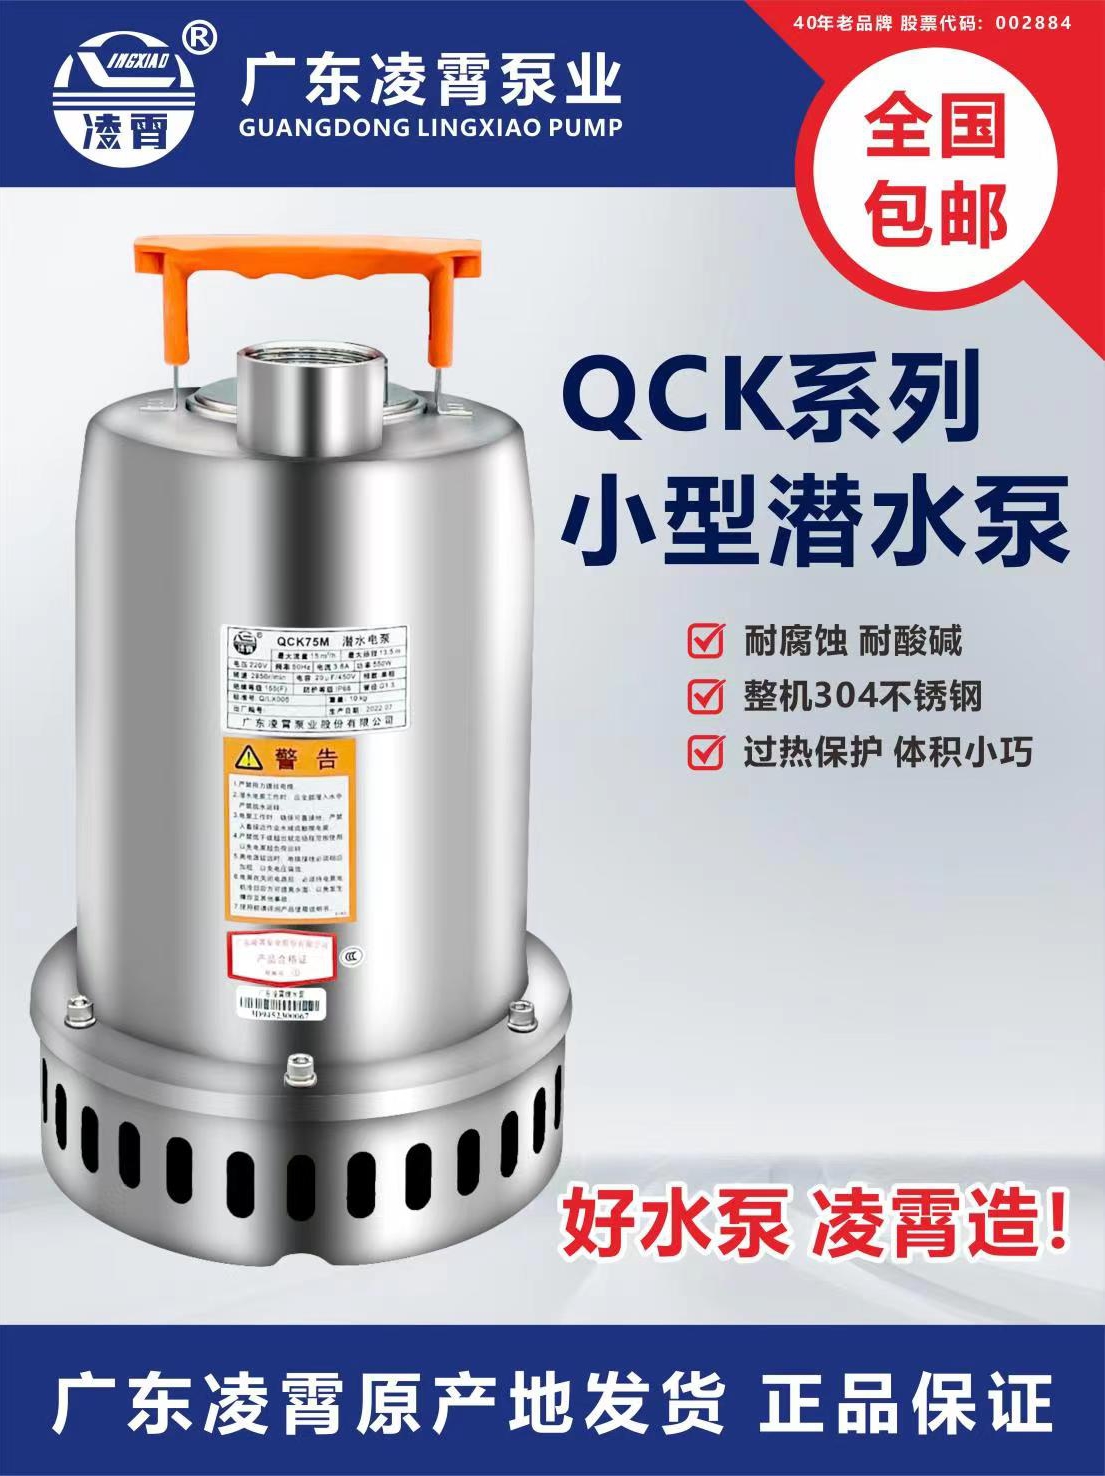 广东凌霄QCK型304不锈钢直流潜水泵家用抽水机220v小型自动排污泵